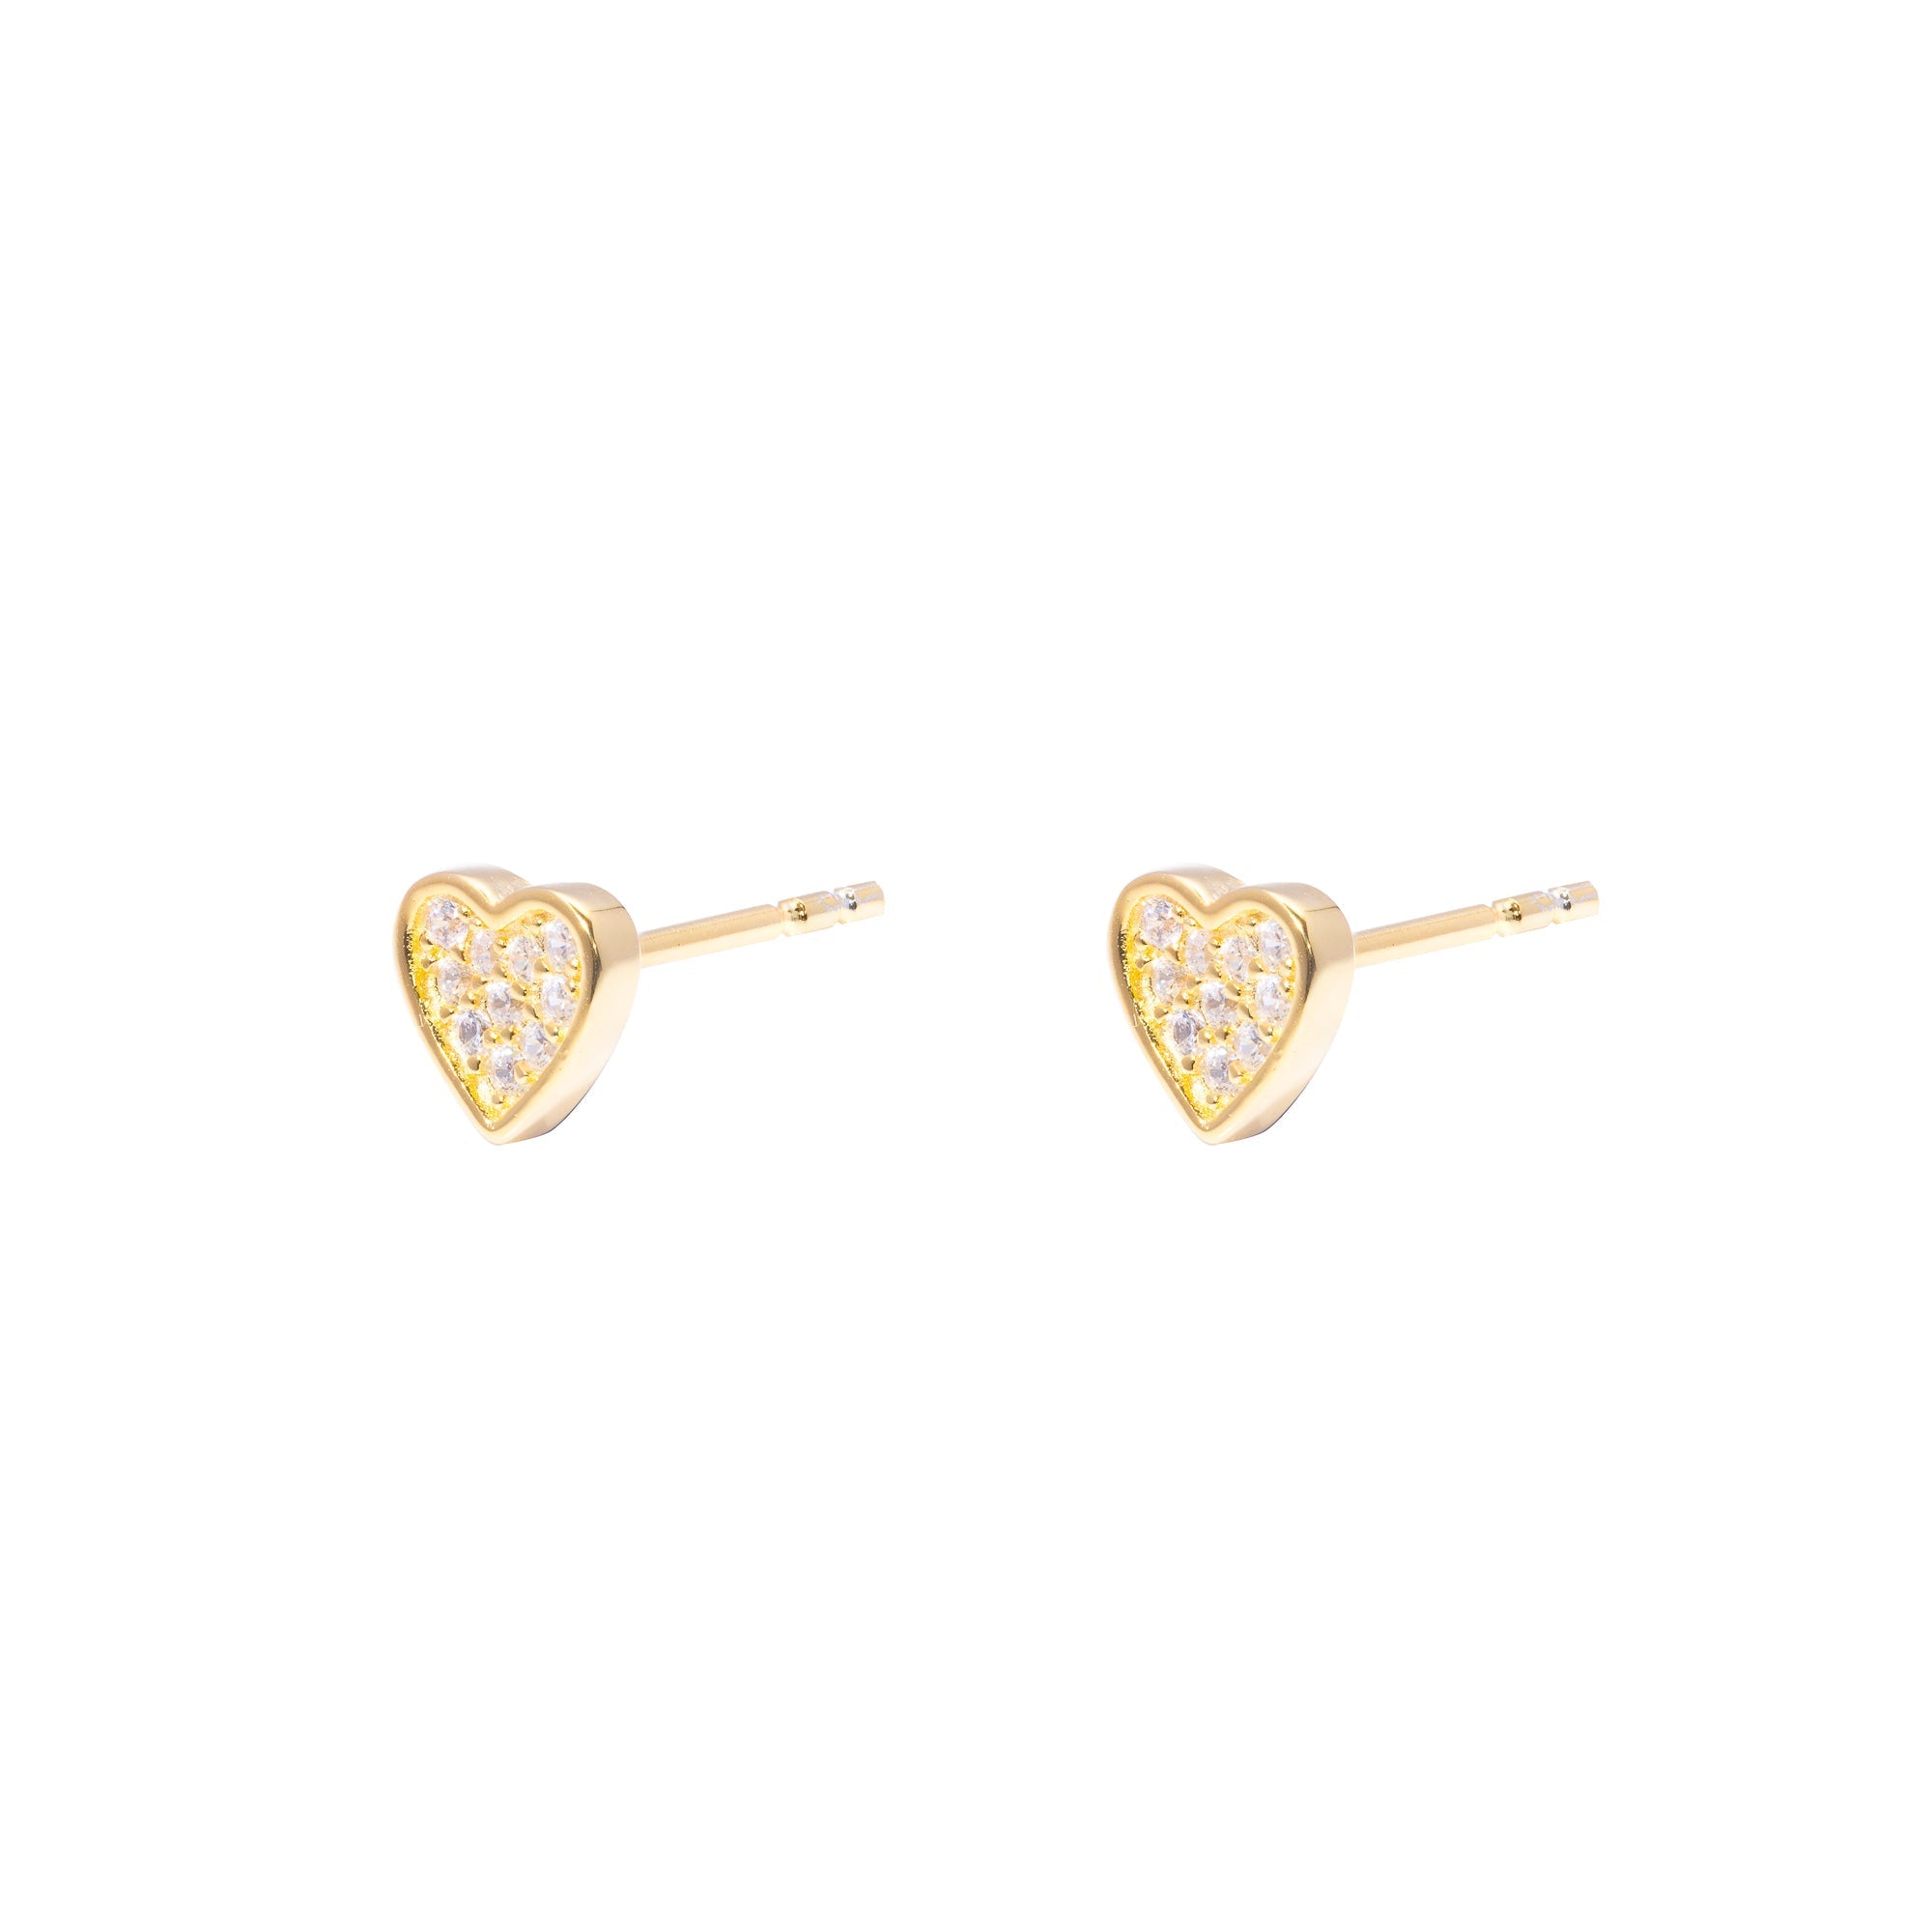 Duo Jewellery Earrings Yellow Gold Amour Stud Earrings